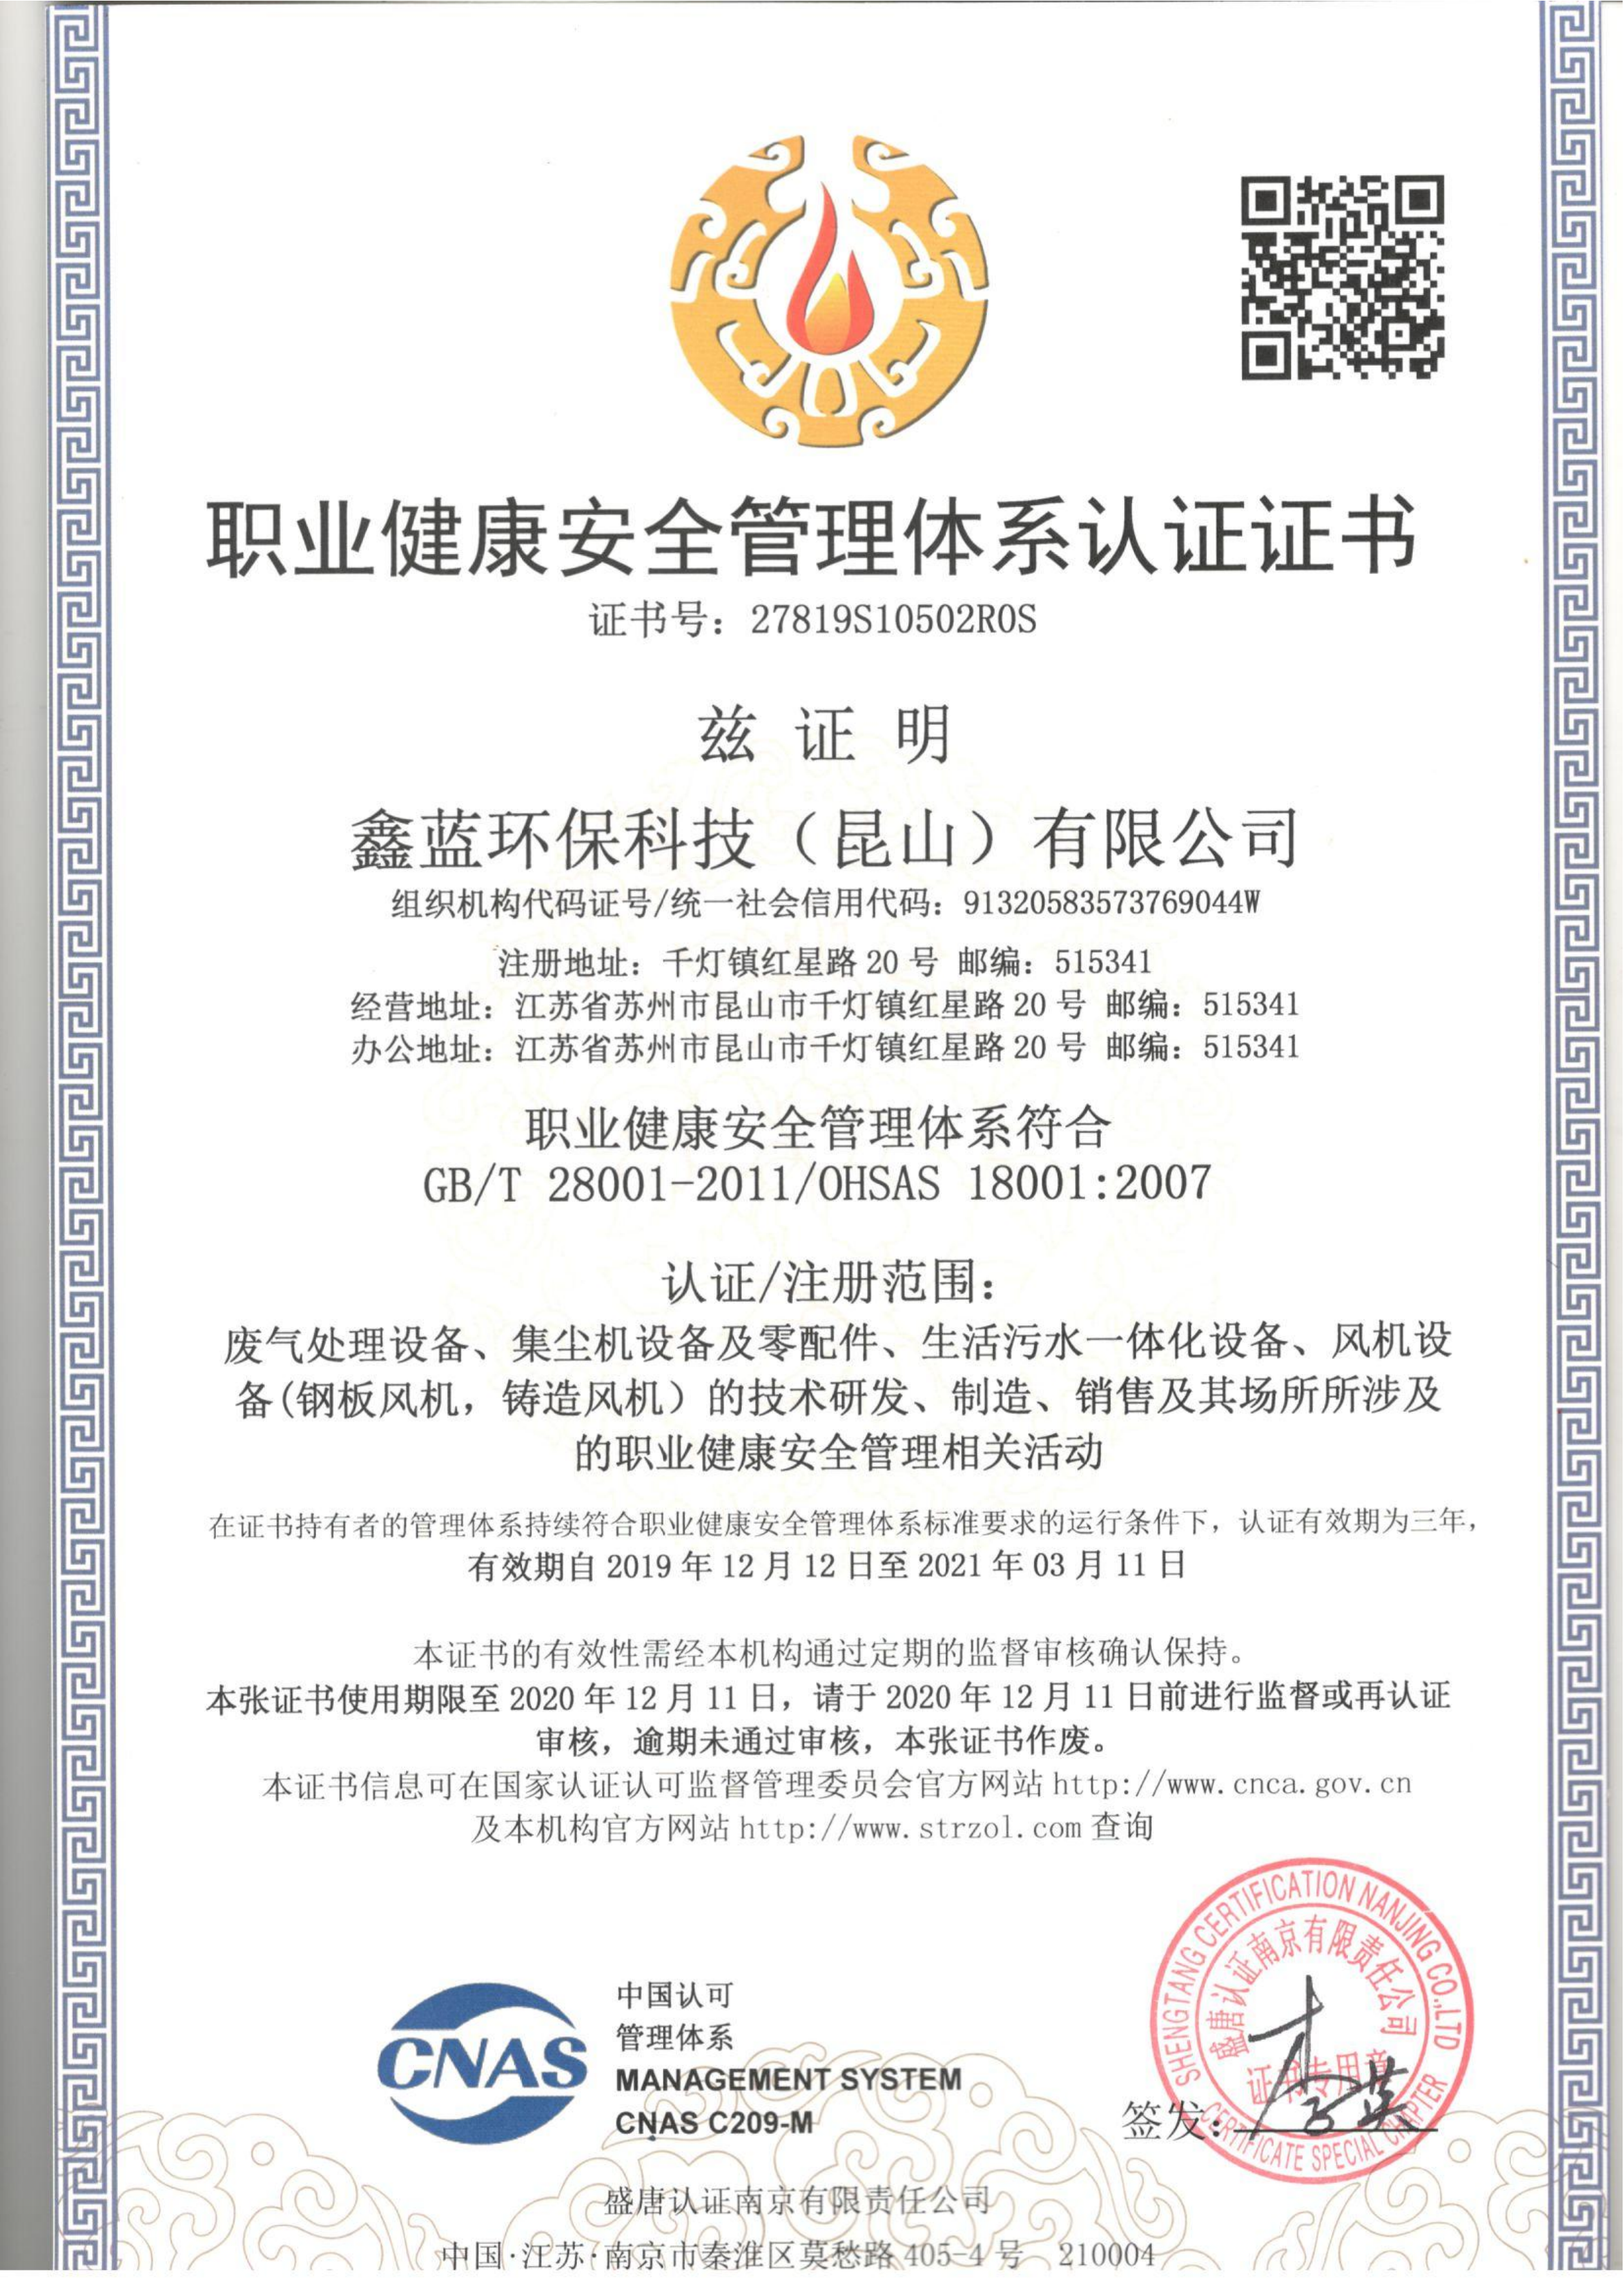 鑫蓝环保职业健康安全管理体系认证证书